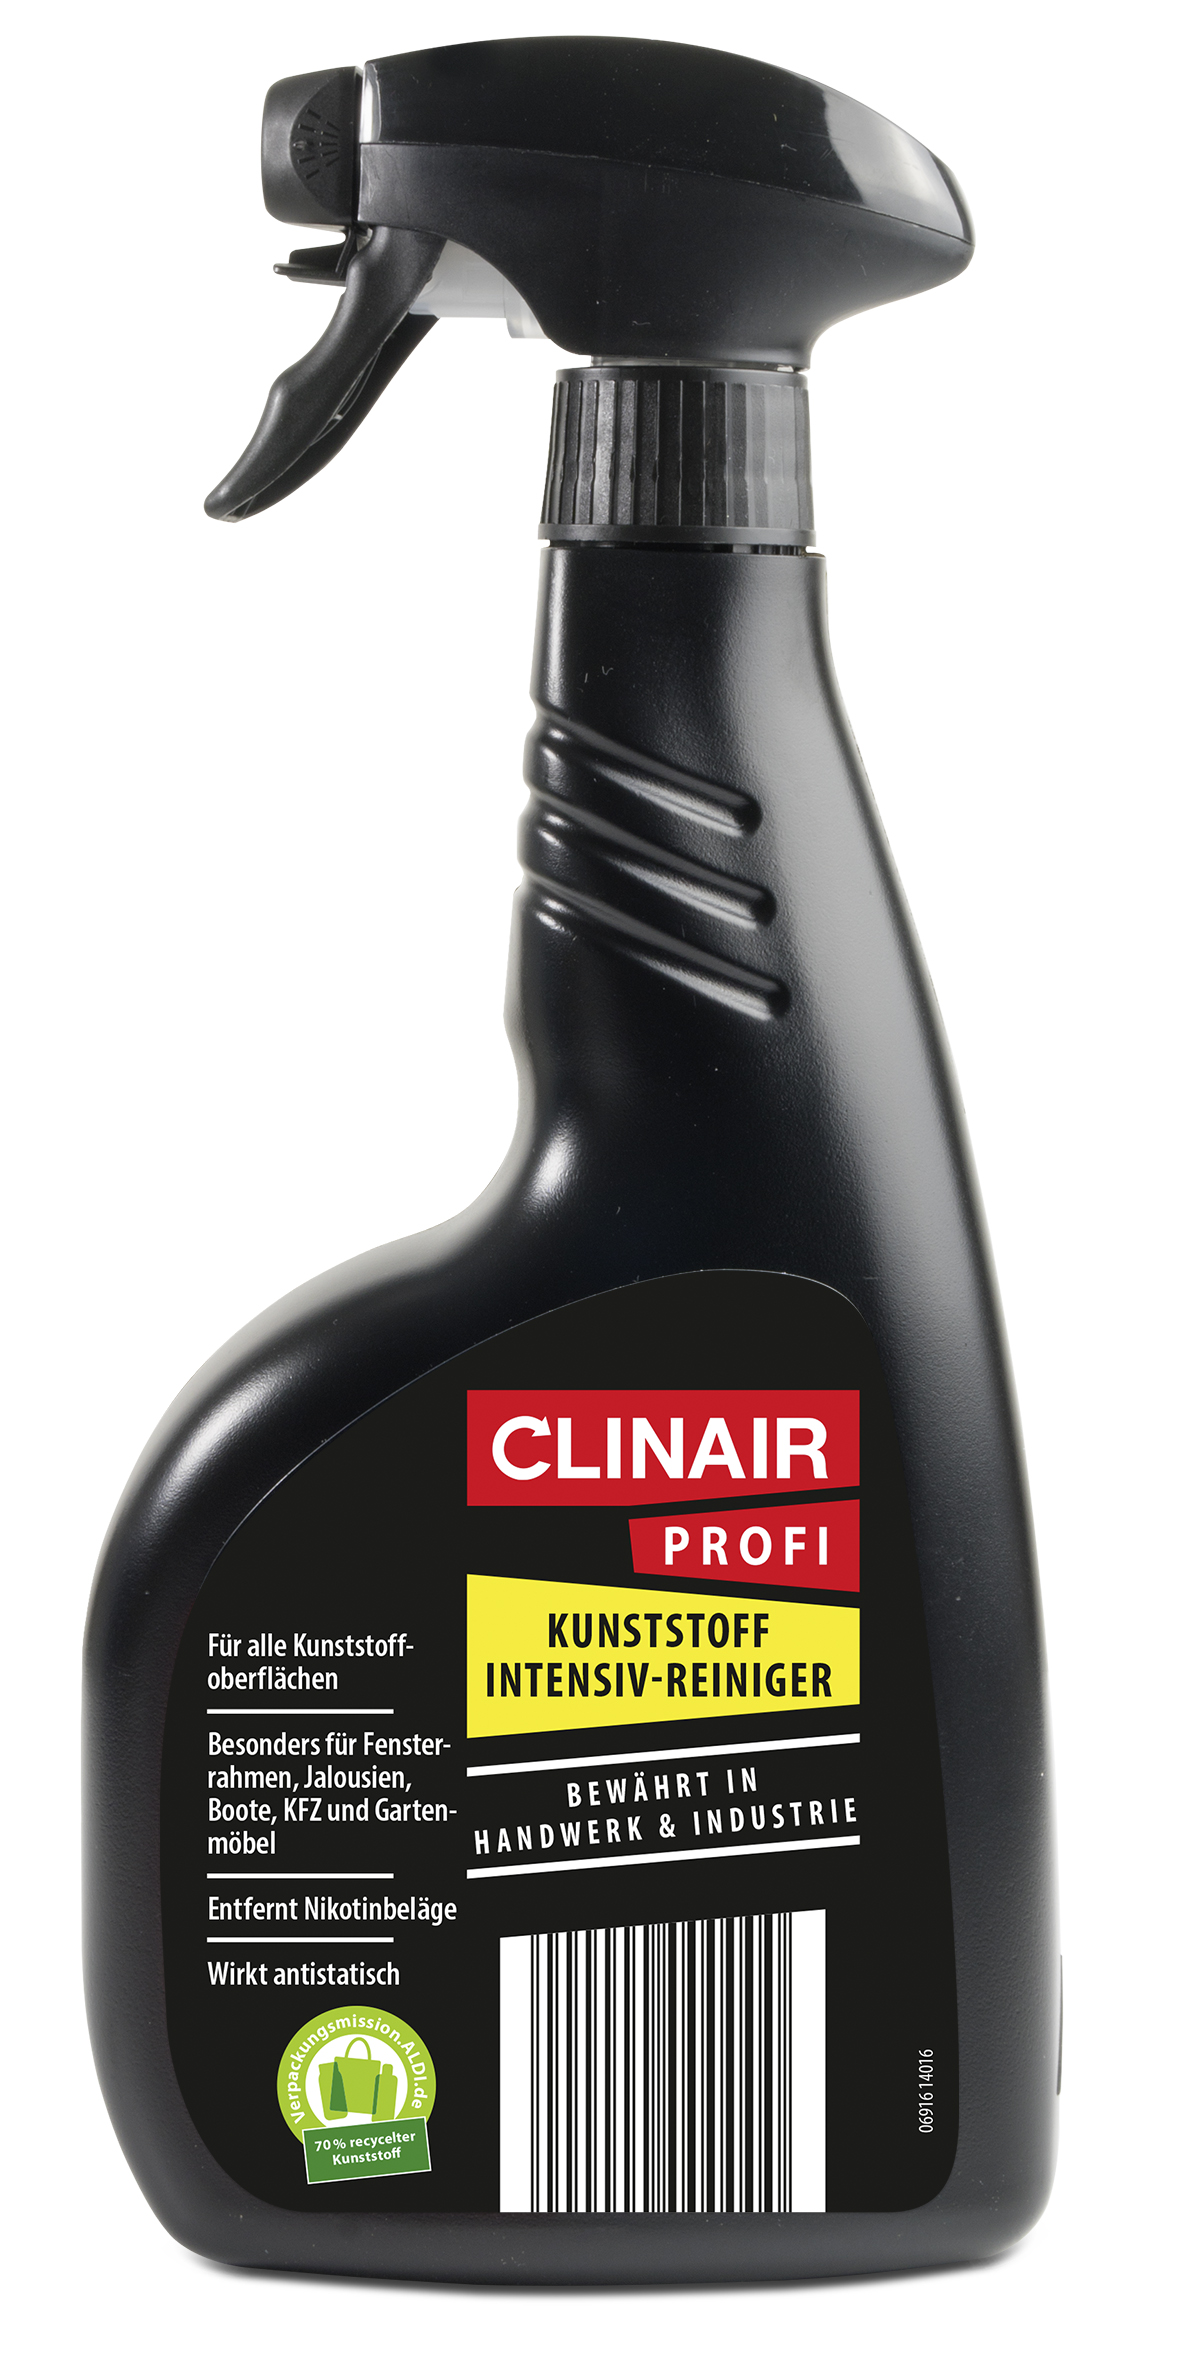 Clinair Profi Kunststoff Intensiv-Reiniger